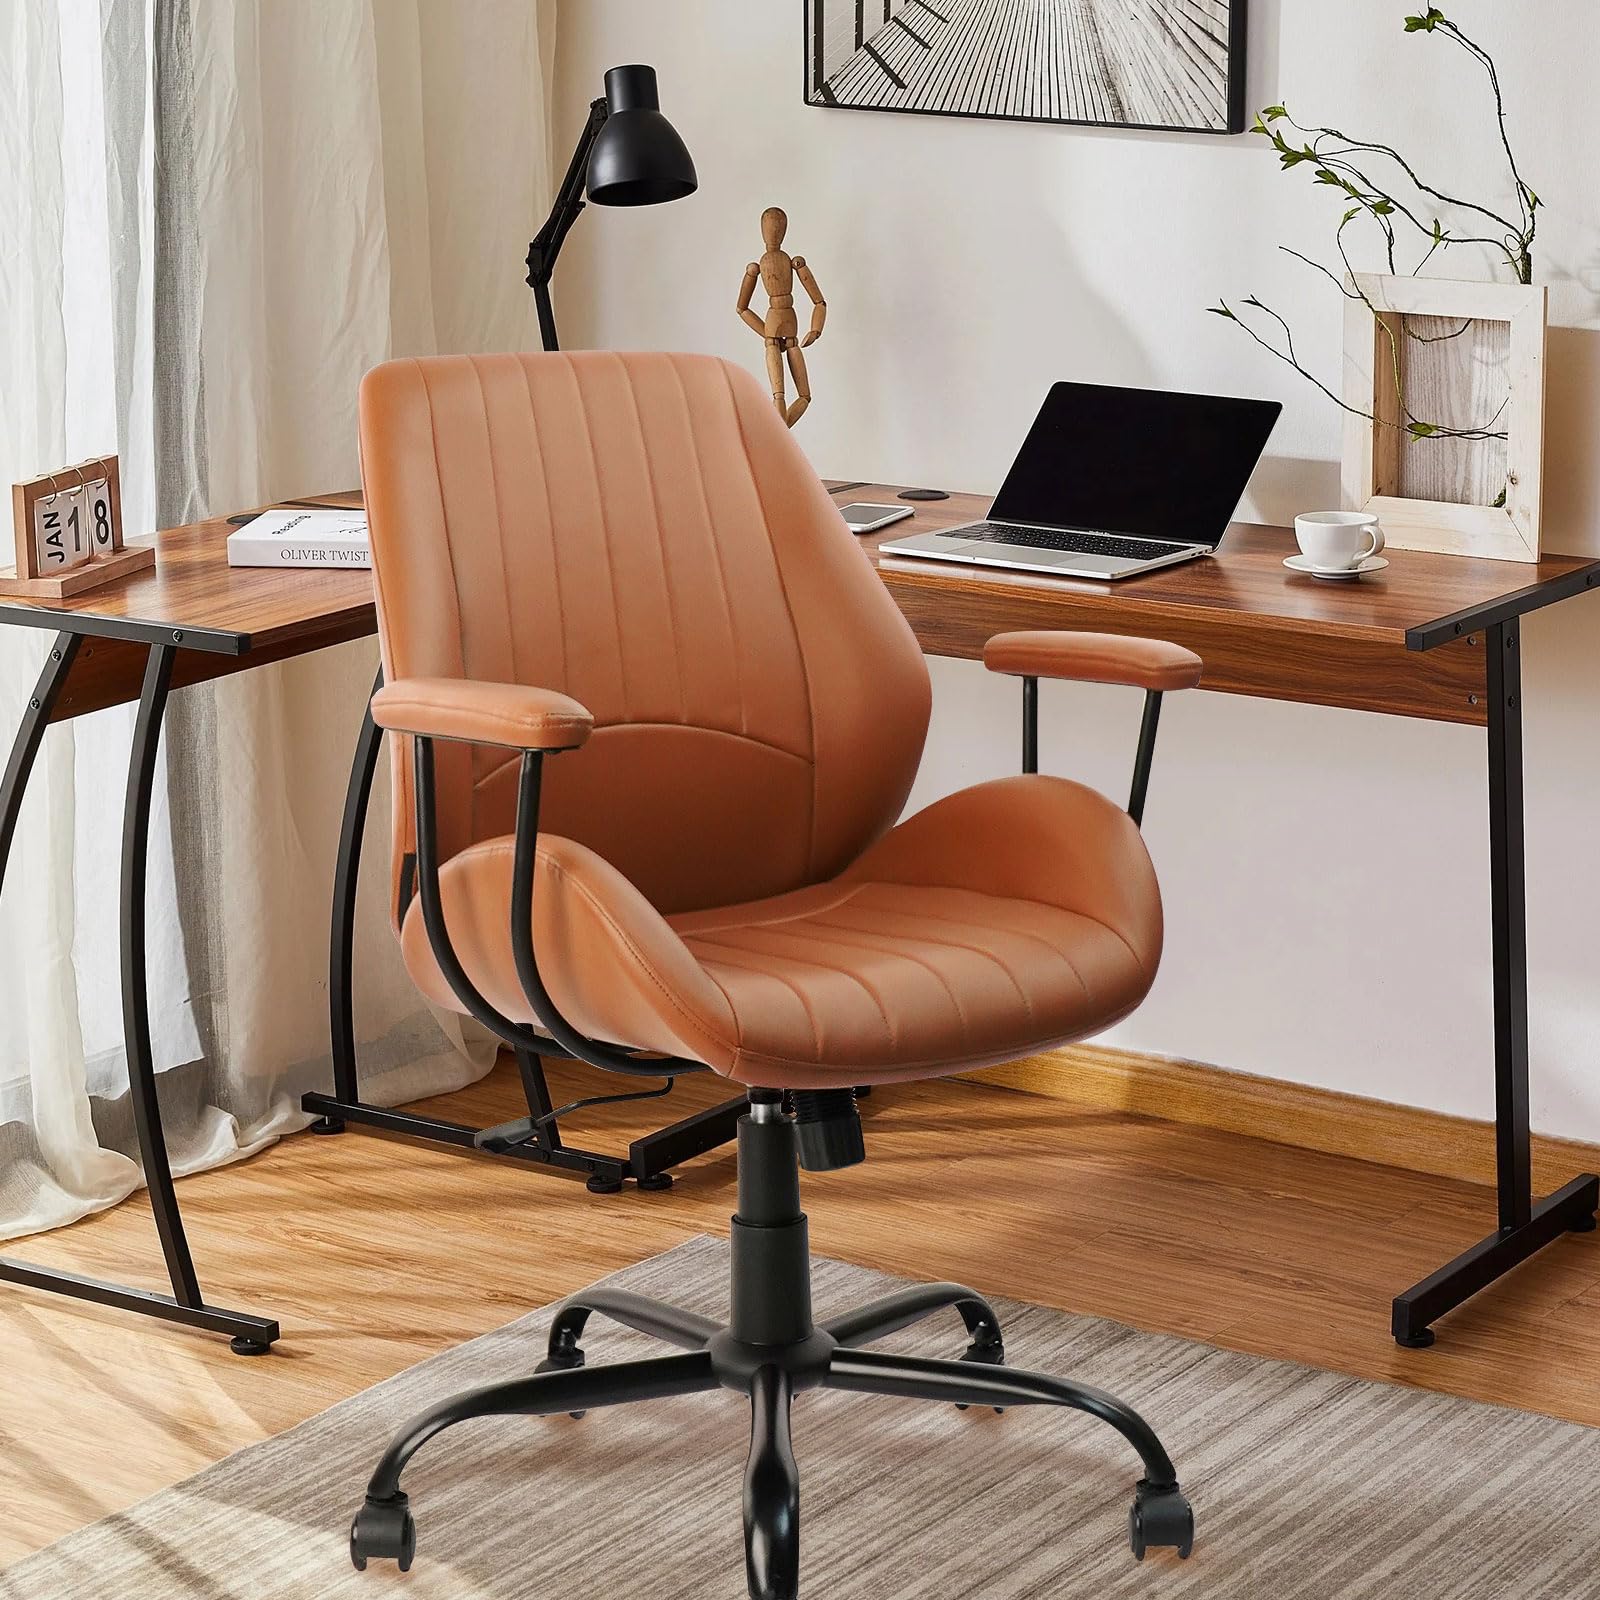 Cushion Office Chair - Cognac